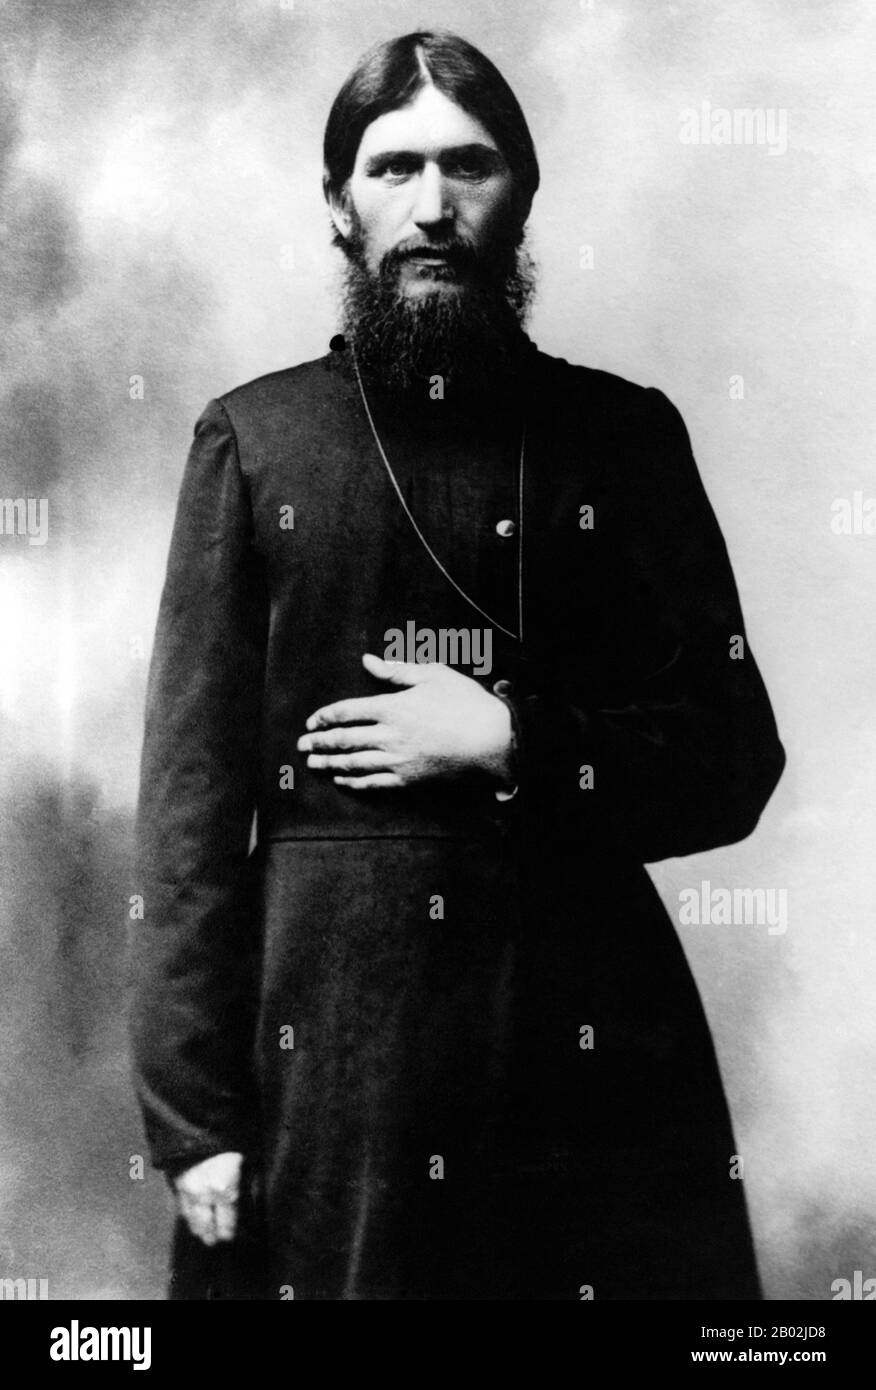 Grigori Yefimovich Rasputin; battezzato il 22 gennaio 1869 – assassinato il 30 dicembre 1916 fu un contadino russo, mistico, guaritore di fede e consigliere privato dei Romanov. Divenne una figura influente a San Pietroburgo dopo l'agosto 1915 quando lo zar Nicolas II prese il comando dell'esercito sul fronte. C'è molta incertezza sulla vita di Rasputin e sul grado di influenza che ha esercitato sullo Zar e sul suo governo. I conti sono spesso basati su memorie dubbie, hearsay e leggenda. Mentre la sua influenza e il suo ruolo possono essere stati esagerati, gli storici concordano sul fatto che la sua presenza ha giocato un ruolo significativo Foto Stock